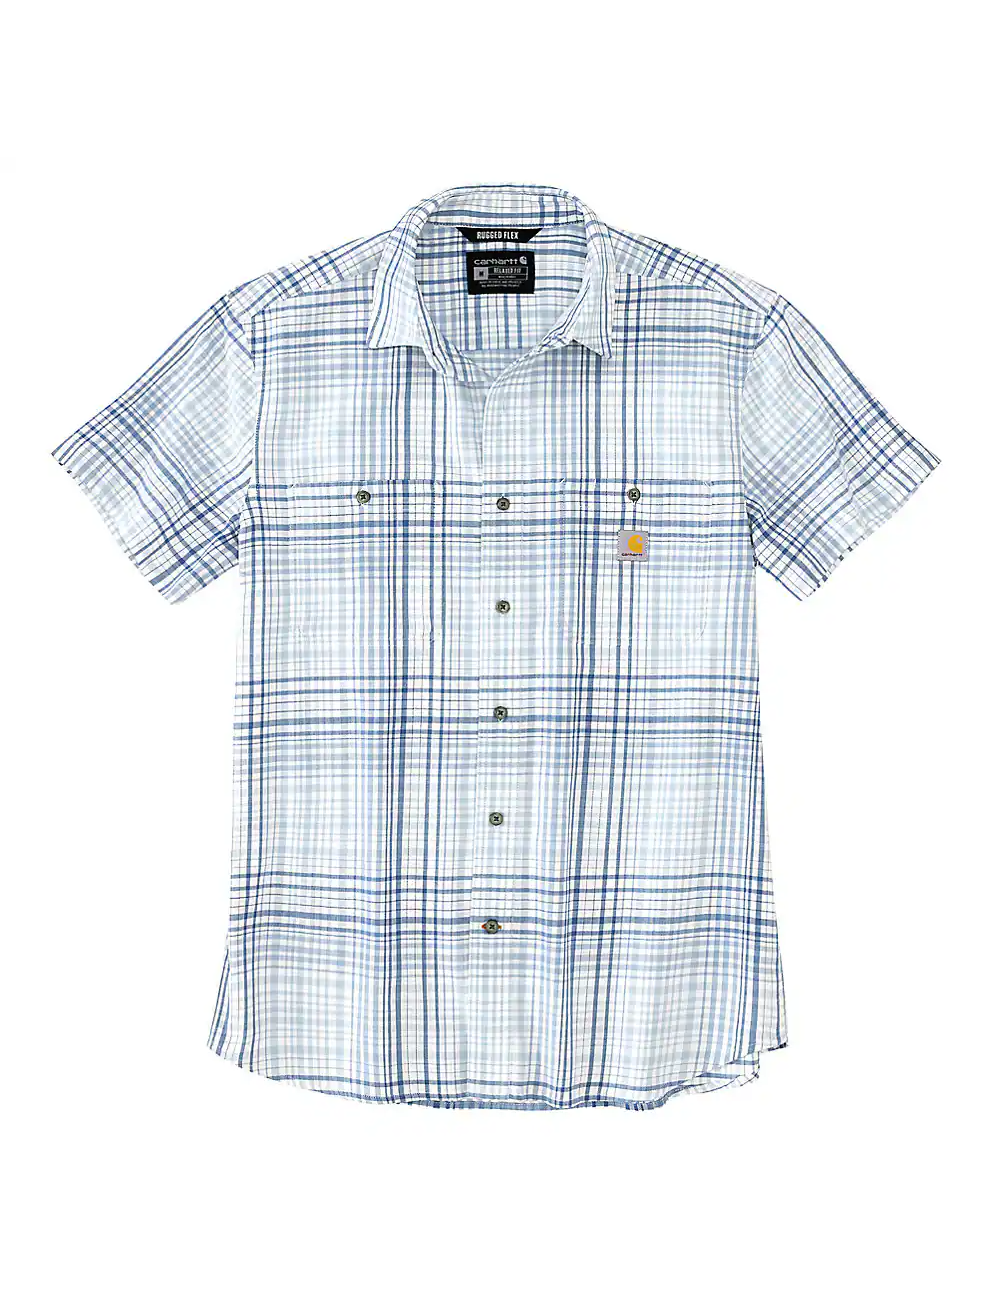 Carhartt Men's Rugged Flex Lightweight Button-Up Short Sleeve Plaid Shirt - Work World - Workwear, Work Boots, Safety Gear